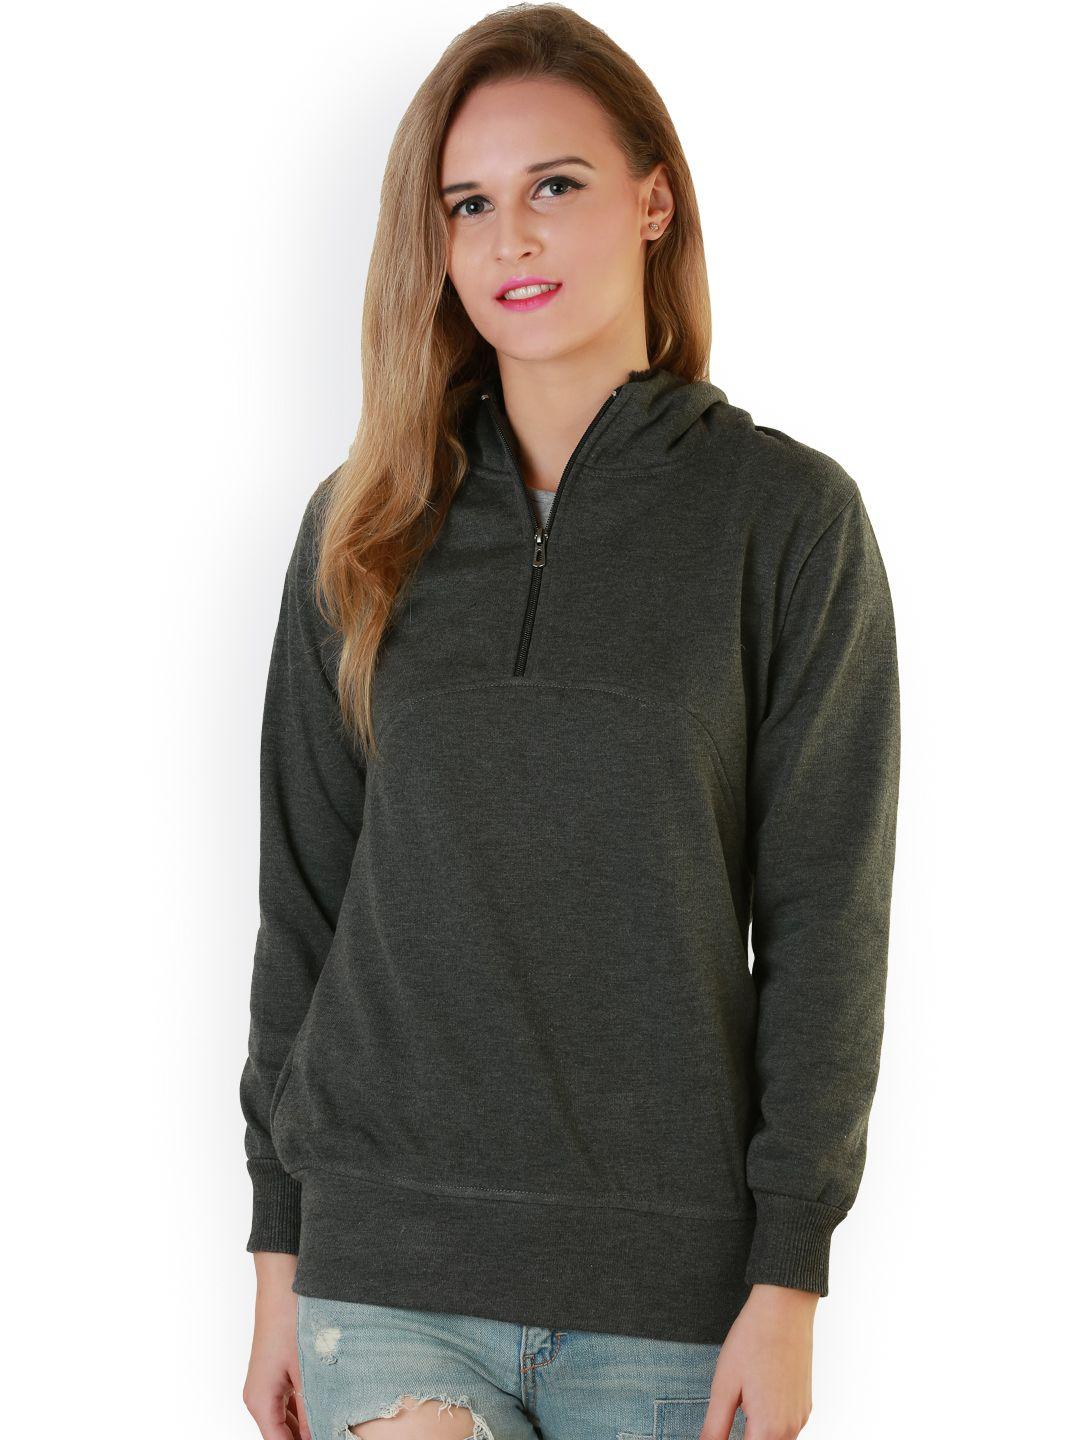 belle-fille-grey-hooded-sweatshirt